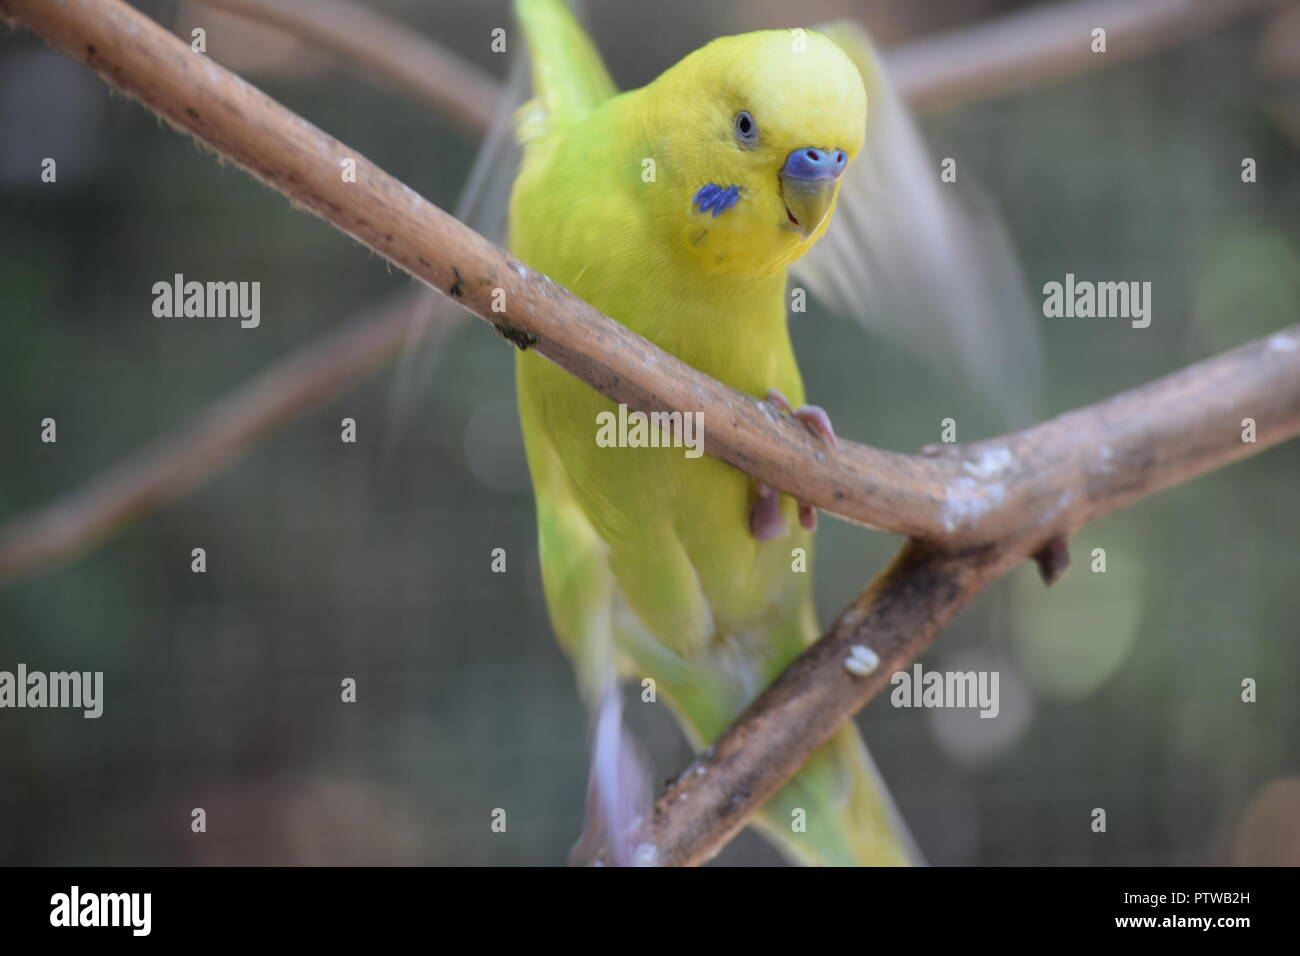 parakeets closeup in zoo aviary Stock Photo